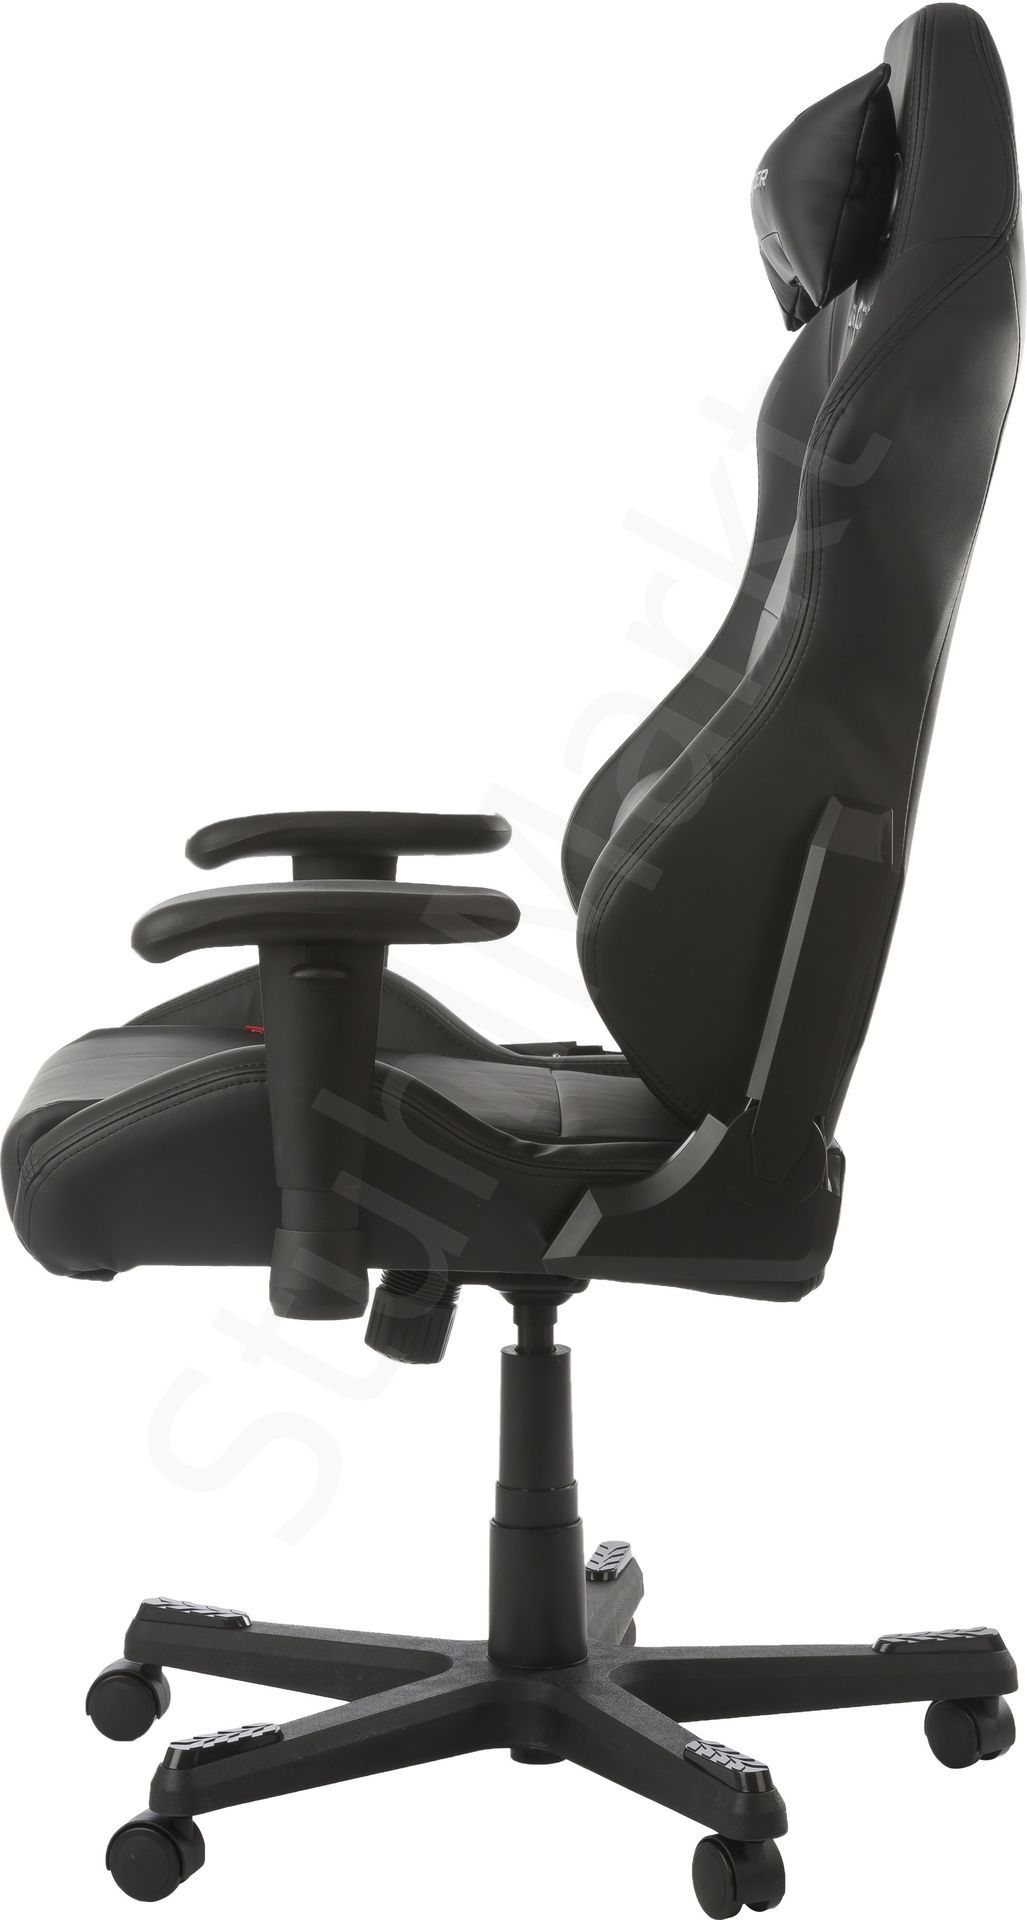  Компьютерное кресло DXRacer OH/DE03/N 6528